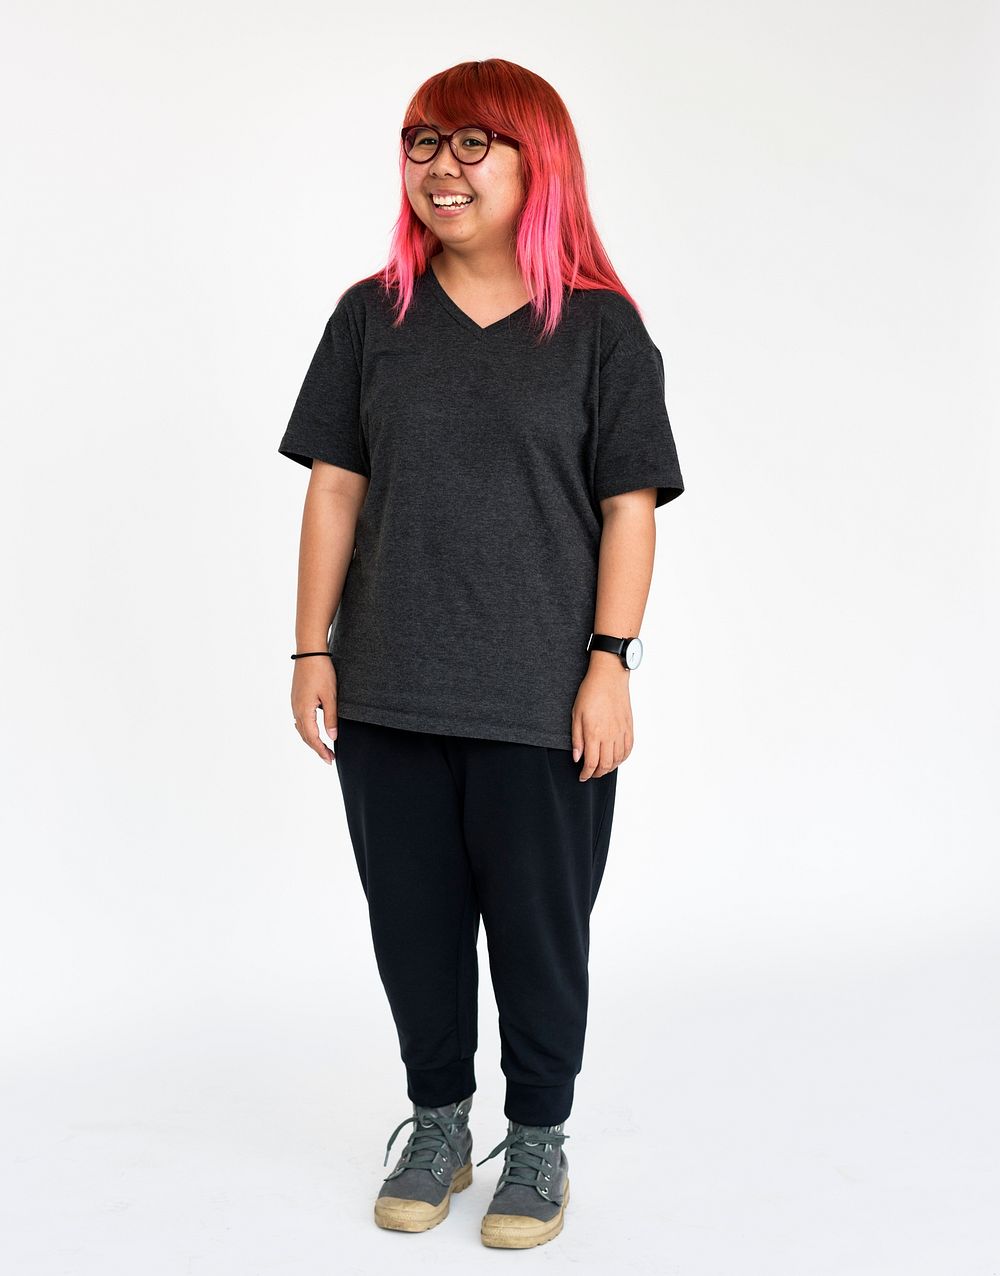 Asian woman young full body studio shoot